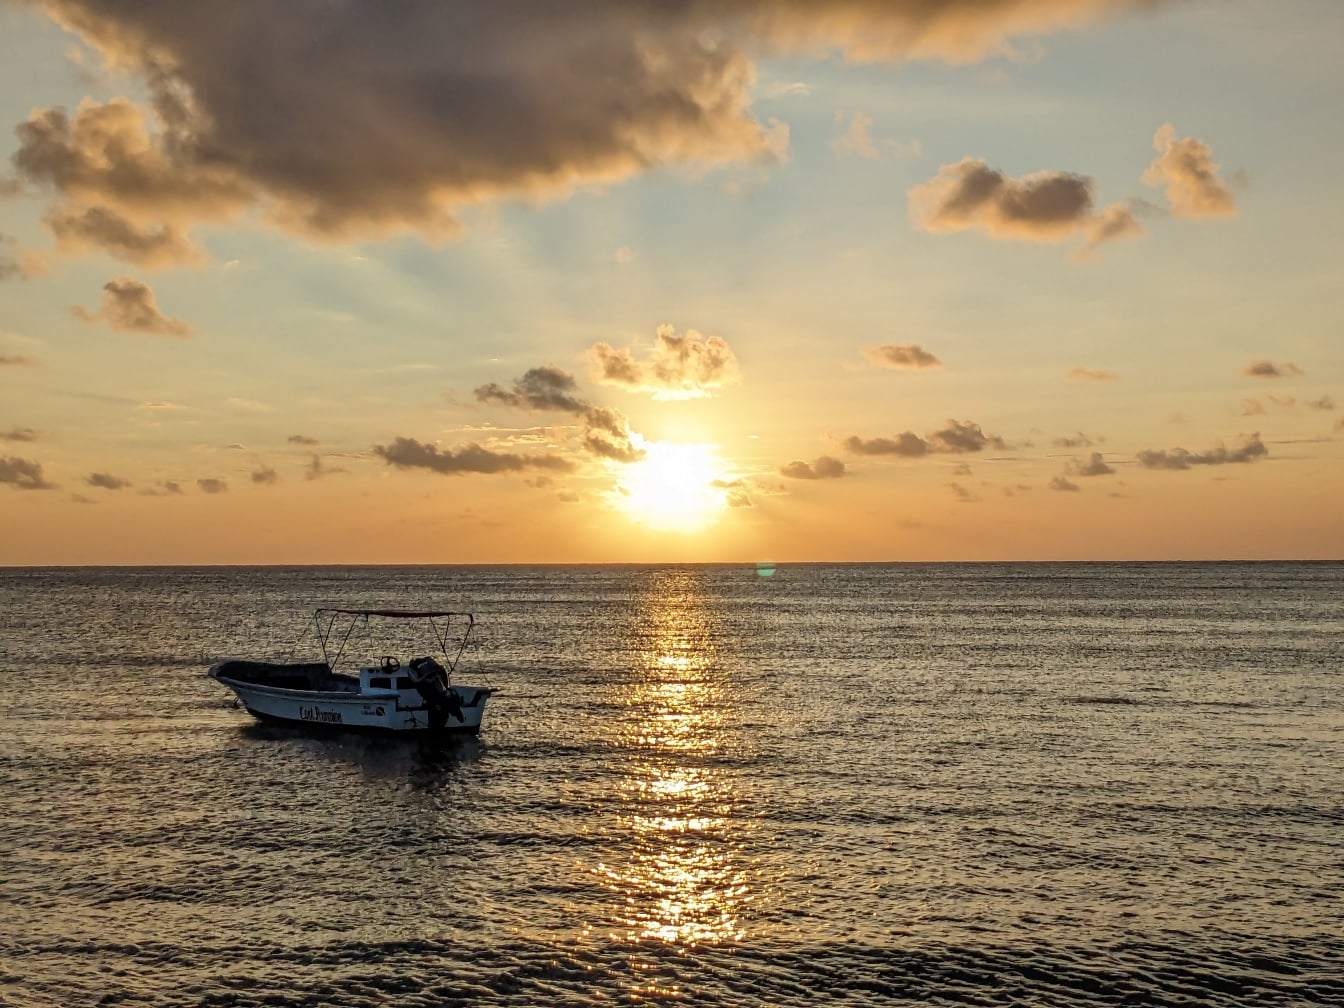 Μικρή βάρκα στη θάλασσα με φωτεινές ακτίνες του ήλιου που αντανακλώνται στον ορίζοντα της θάλασσας κατά την ανατολή του ηλίου